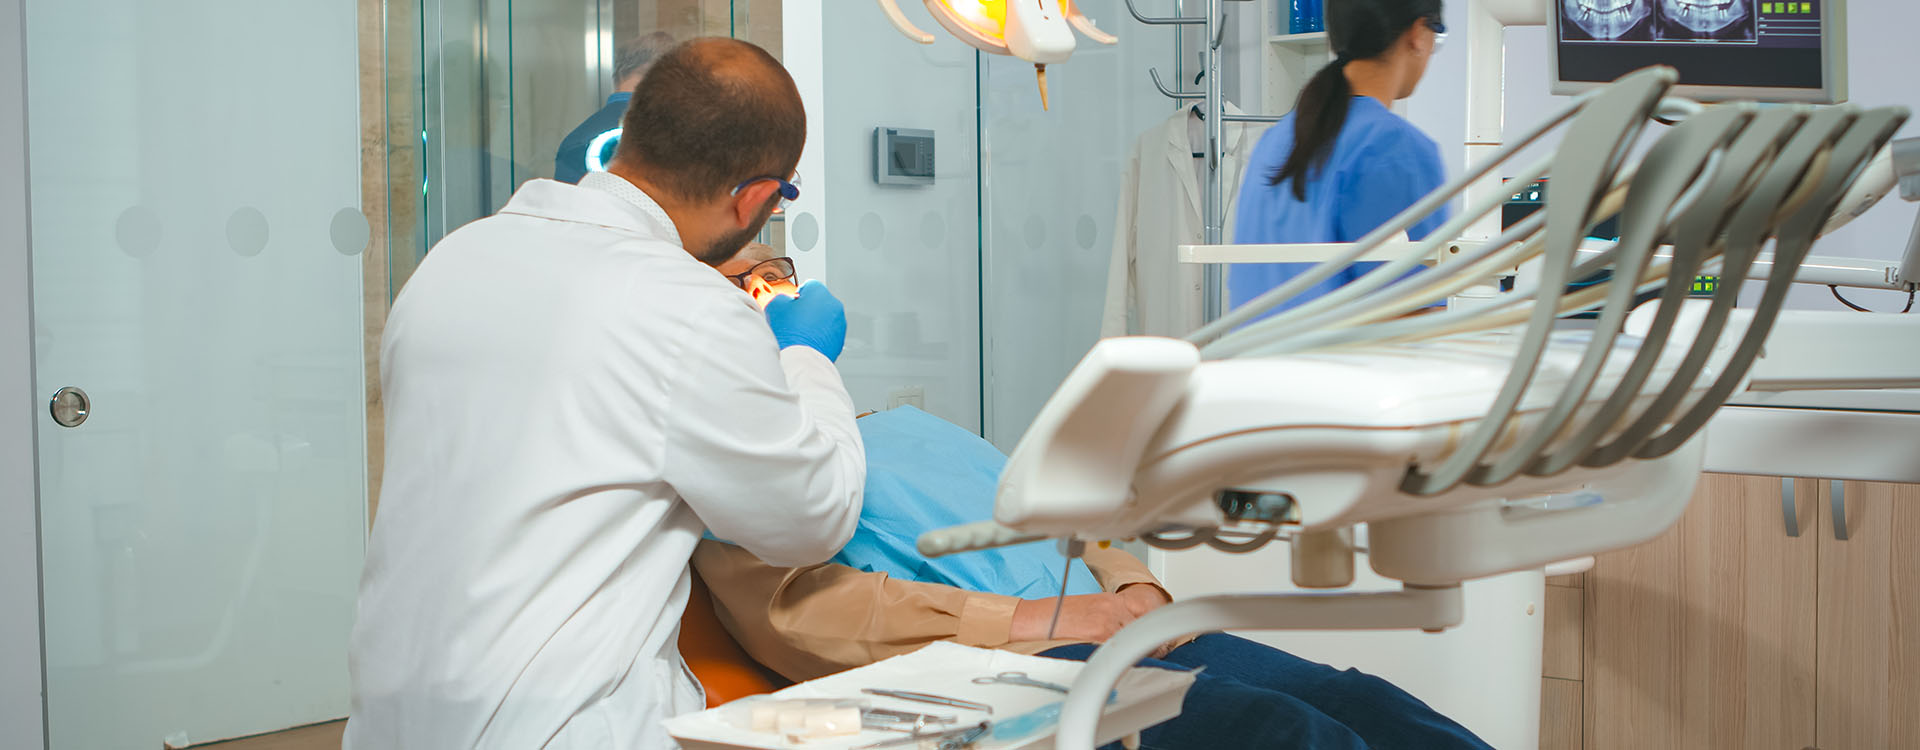 Clínica Dental Andrea Compte, tu Centro Odontológico especializado. Cirugía bucal en Sant Jordi. Dentista prepara todo para la cirugía.